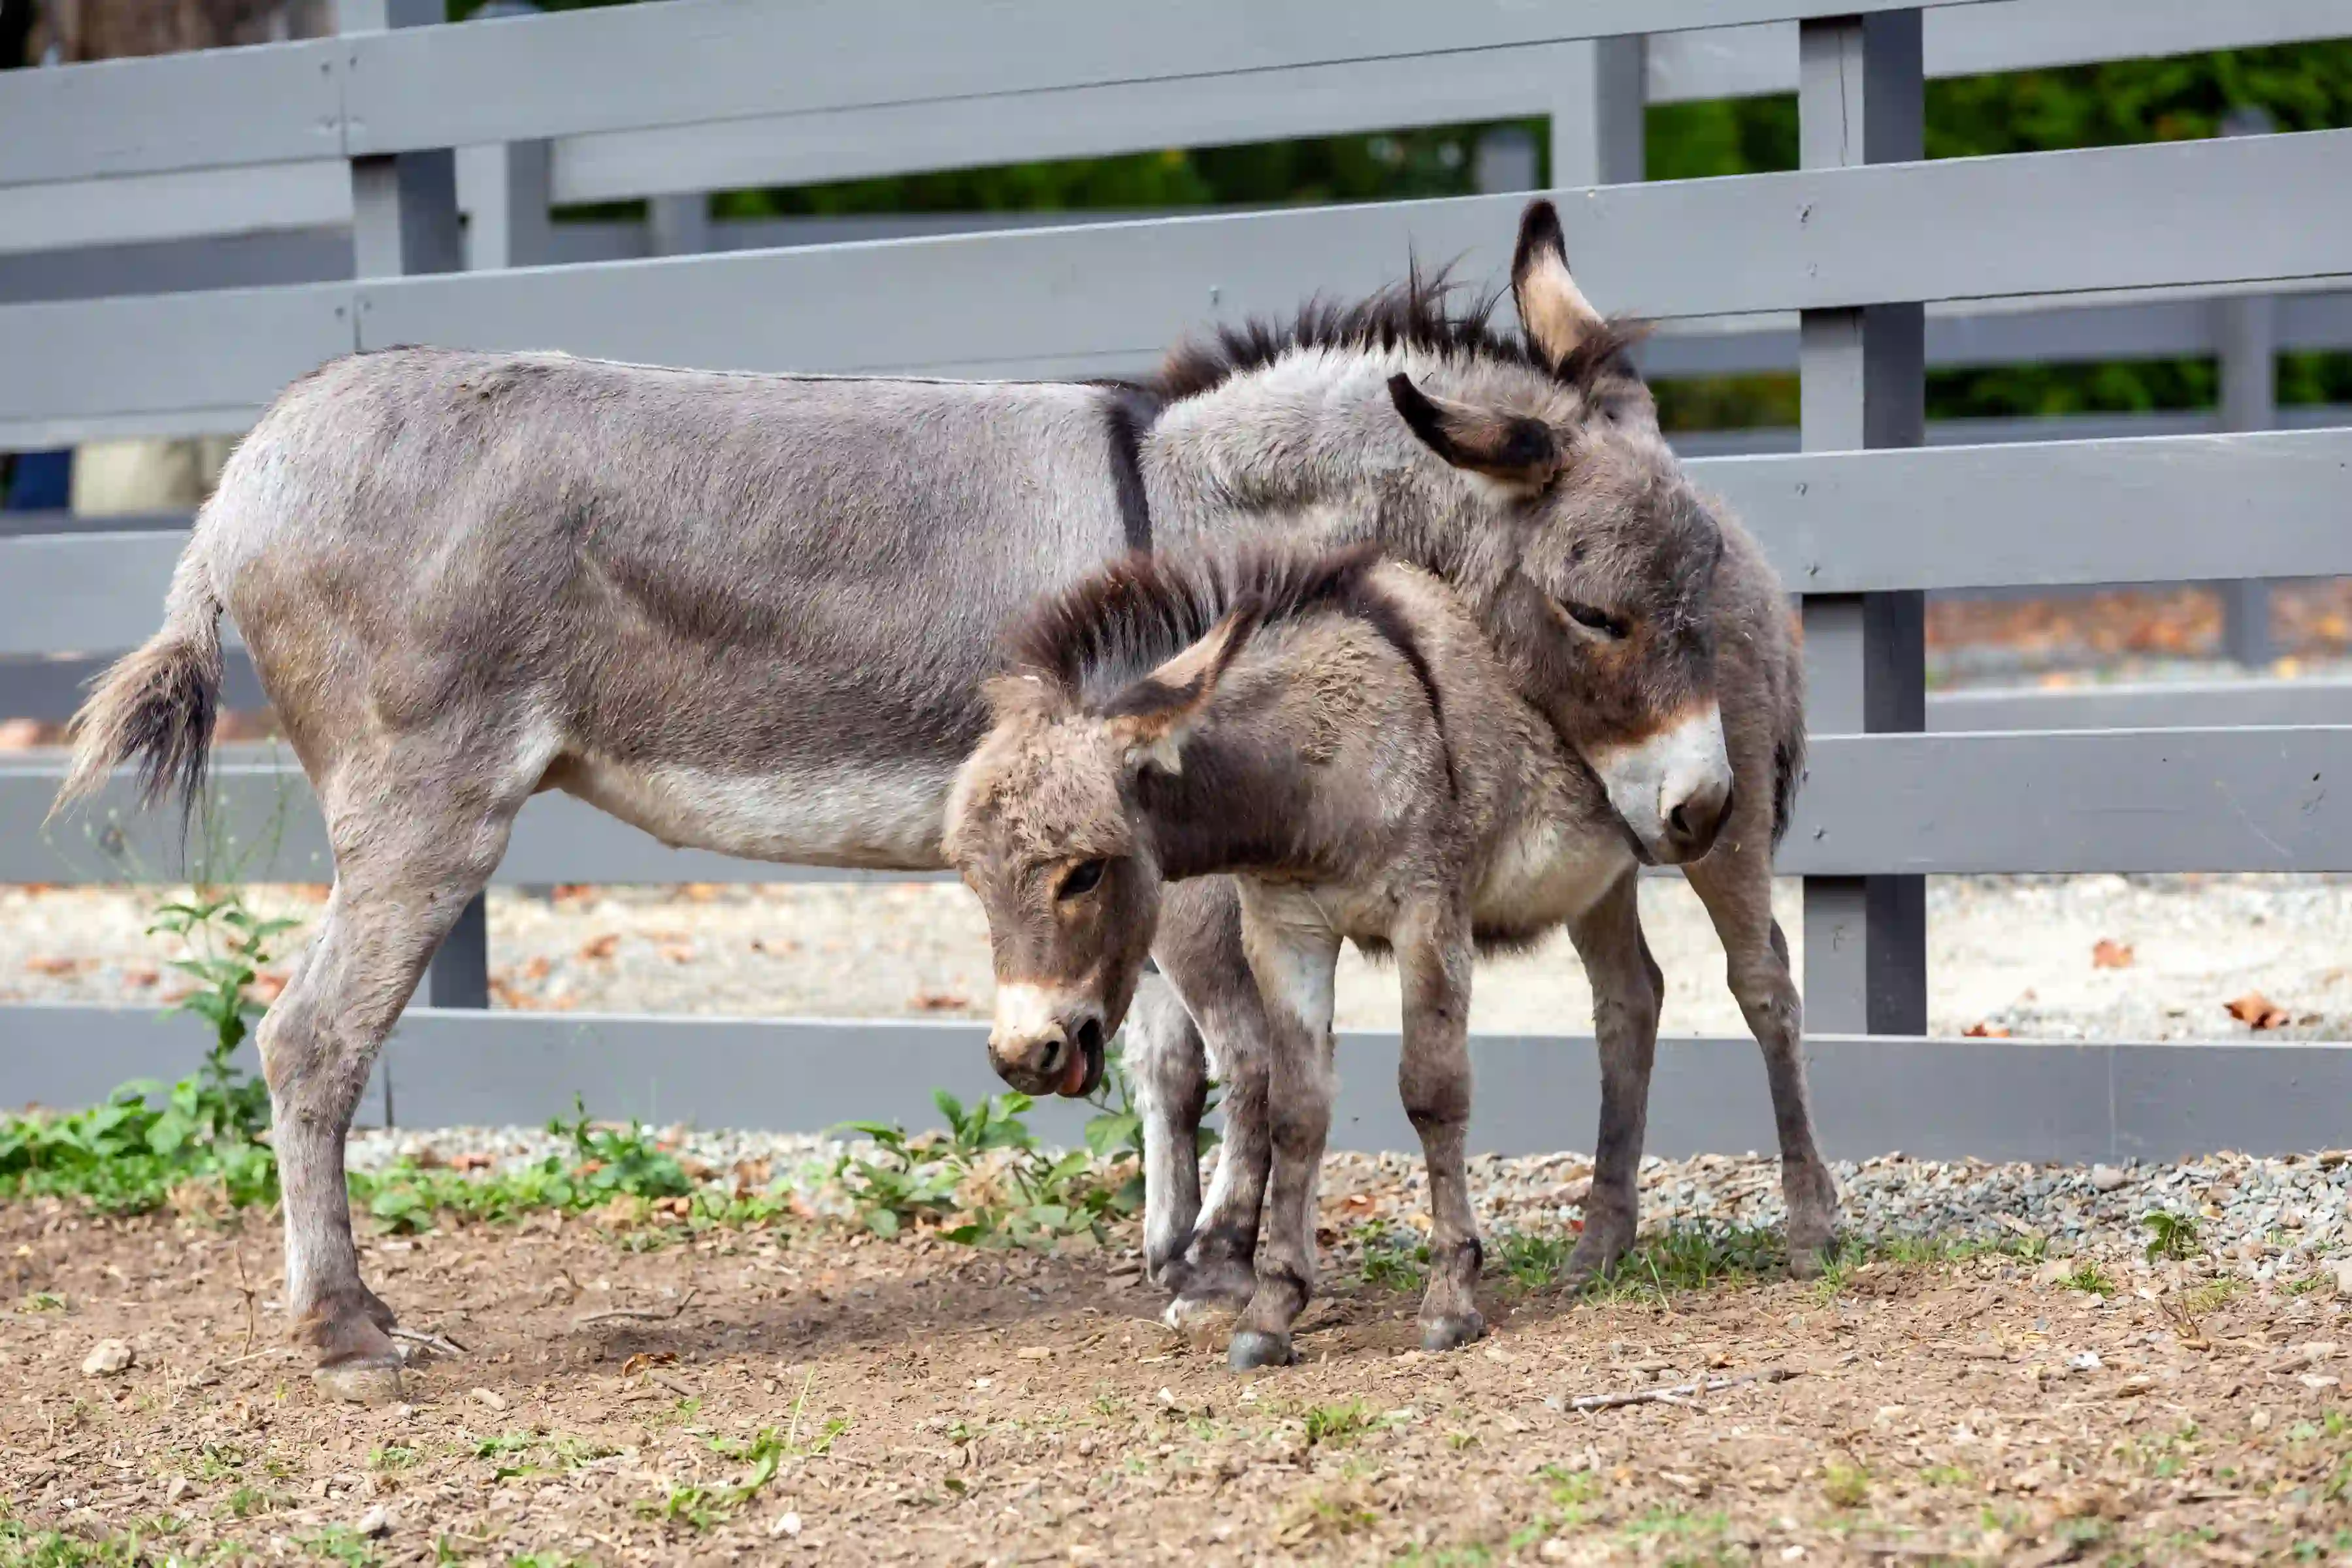 Sardinian donkeys